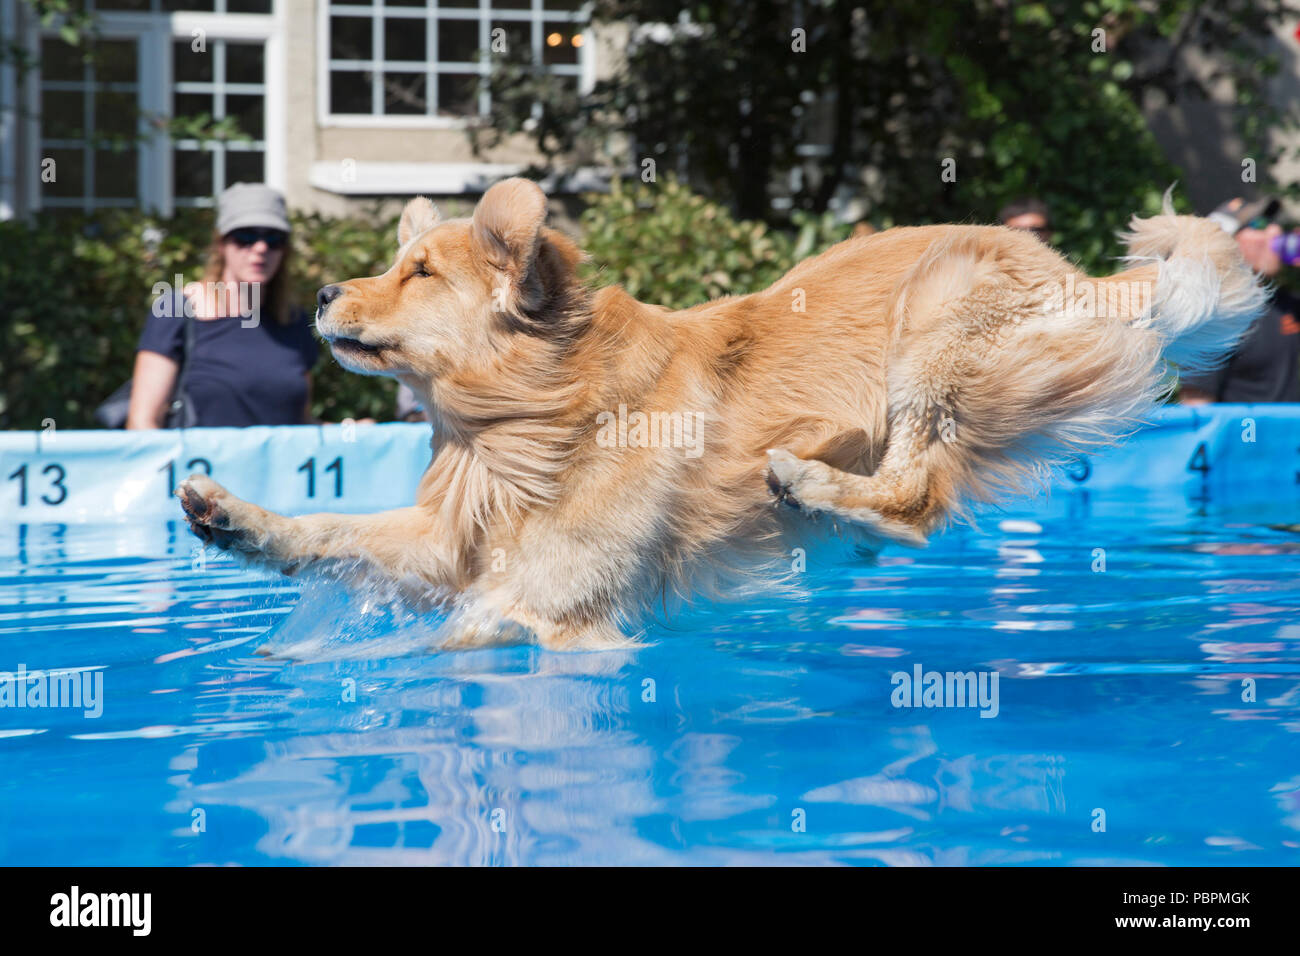 Calgary, Kanada. 28. Juli 2018. Hund springt in den Pool beim Skispringen. Canine Wassersport sind Teil der PET-a-Palooza, einem Outdoor pet-Festival. Rosanne Tackaberry/Alamy leben Nachrichten Stockfoto